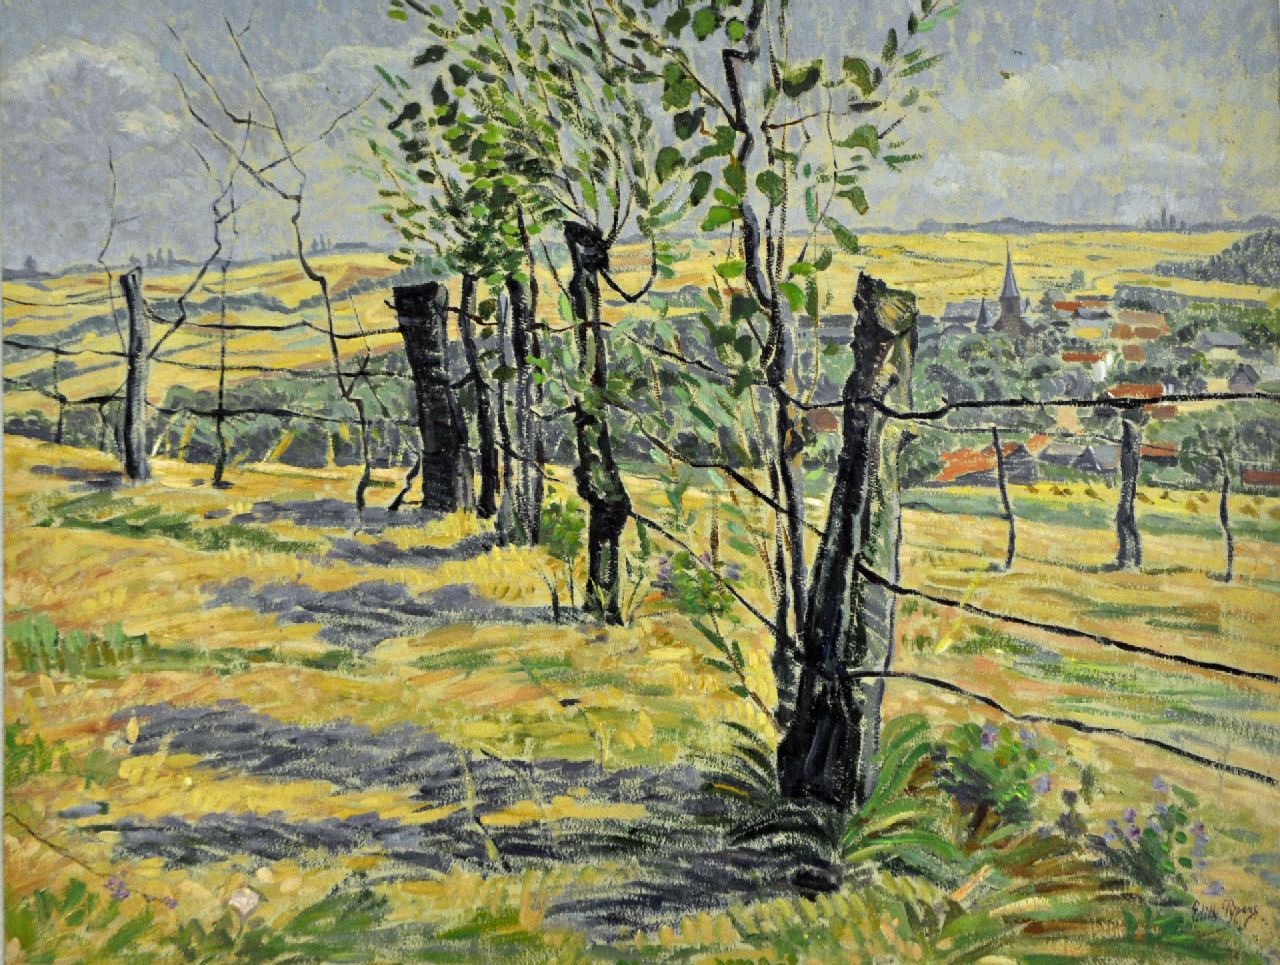 Pijpers E.E.  | 'Edith' Elizabeth Pijpers, Heuvellandschap met dorpje in de verte, olieverf op papier 37,1 x 48,5 cm, gesigneerd rechtsonder